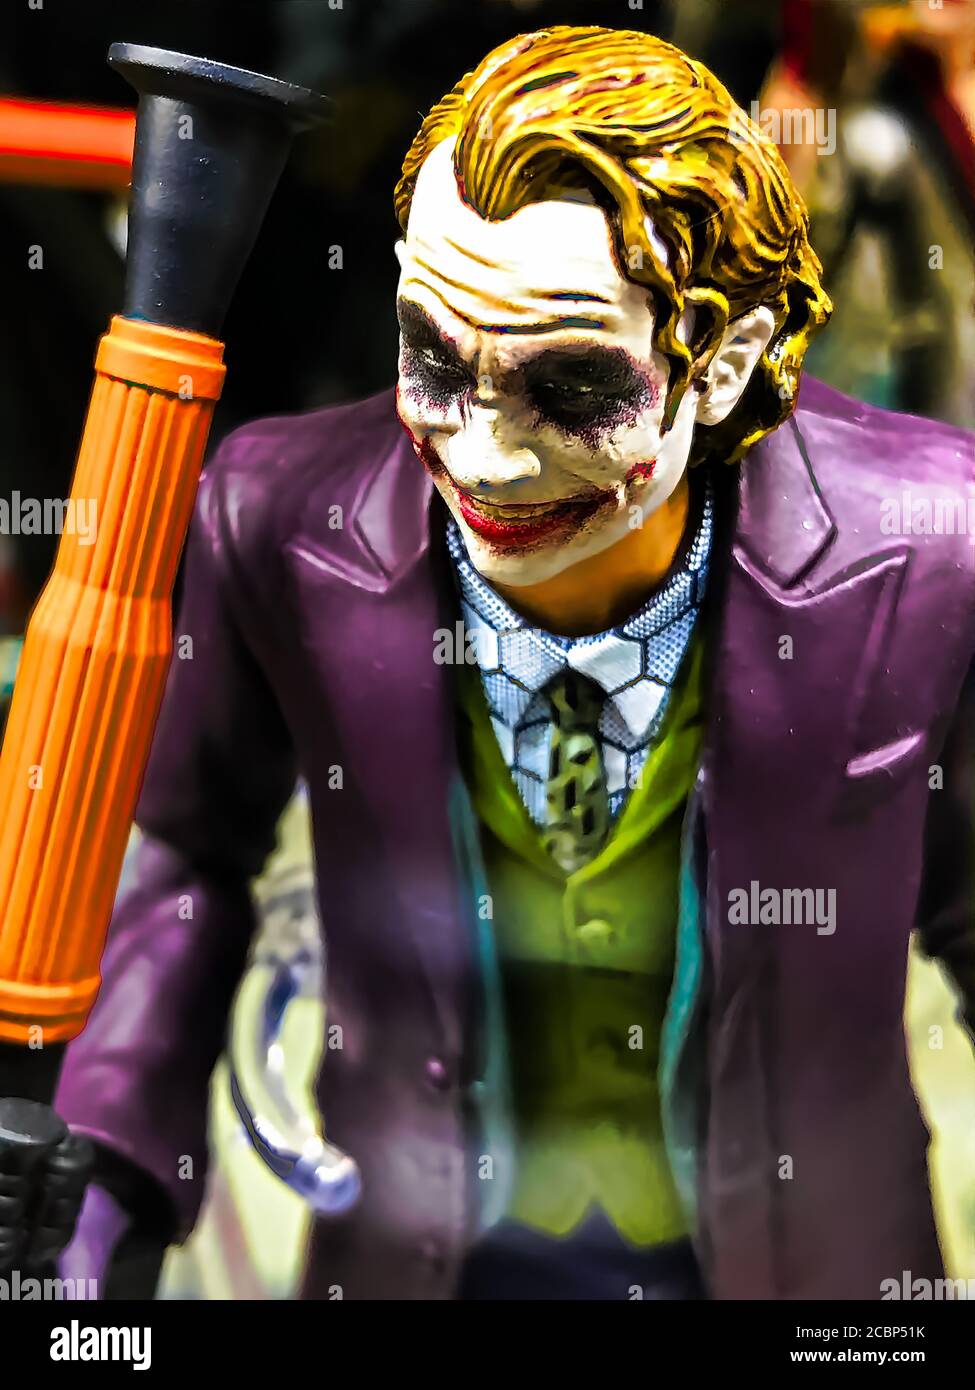 Osaka, Giappone - Apr 23, 2019 : personaggio da DC fumetti BATMAN il Cavaliere Oscuro Joker figura da giocattoli shop.This figura modello di dimensioni 15cm. Foto Stock